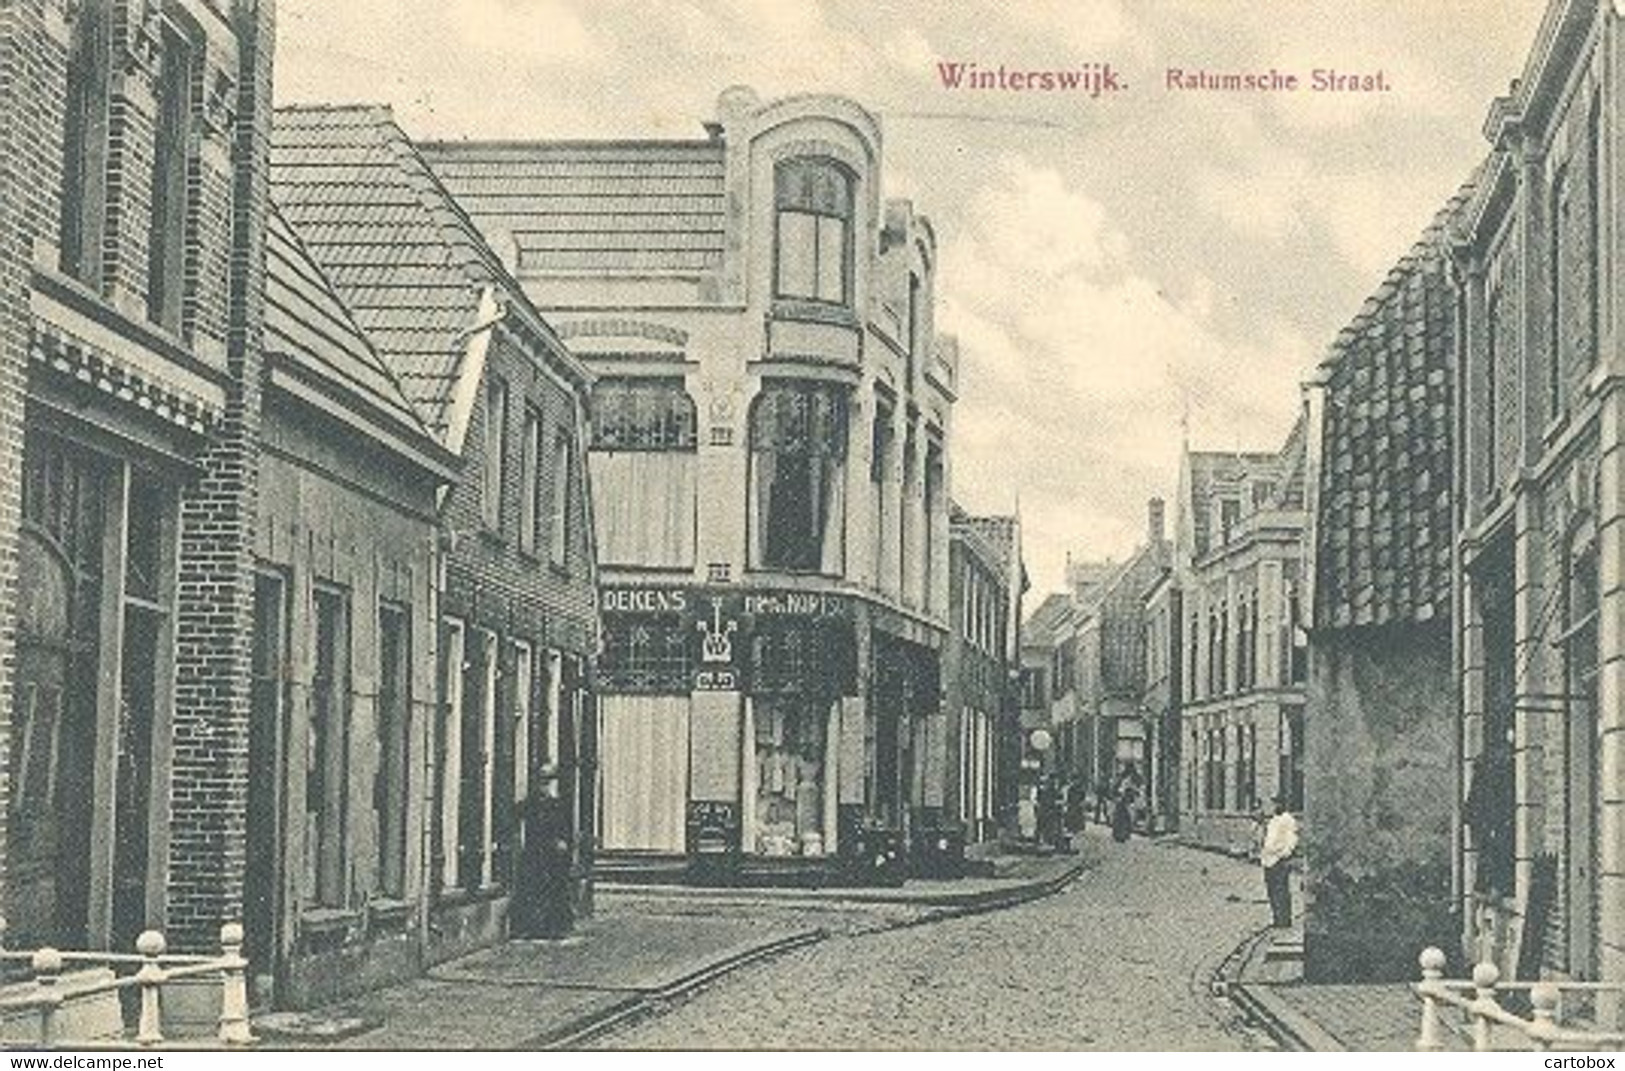 Winterswijk, Ratumsche Straat - Winterswijk